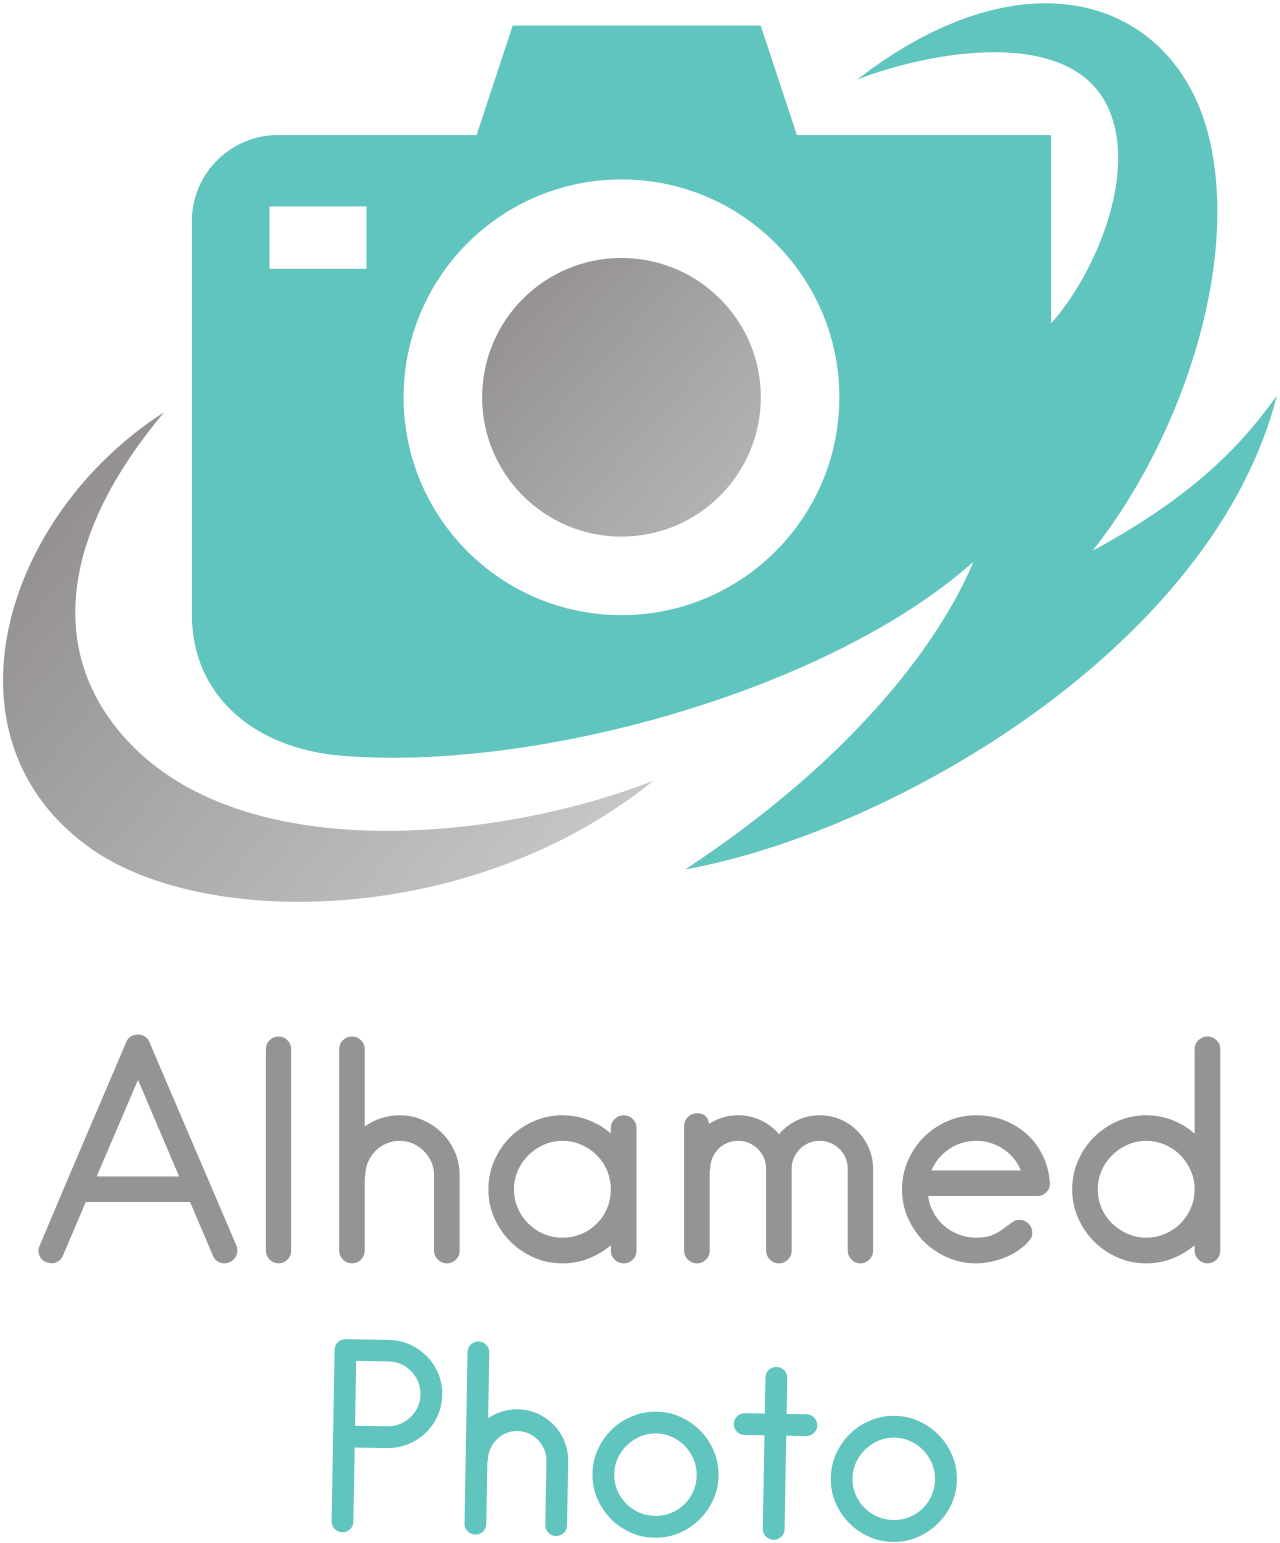 Alhamed's web page